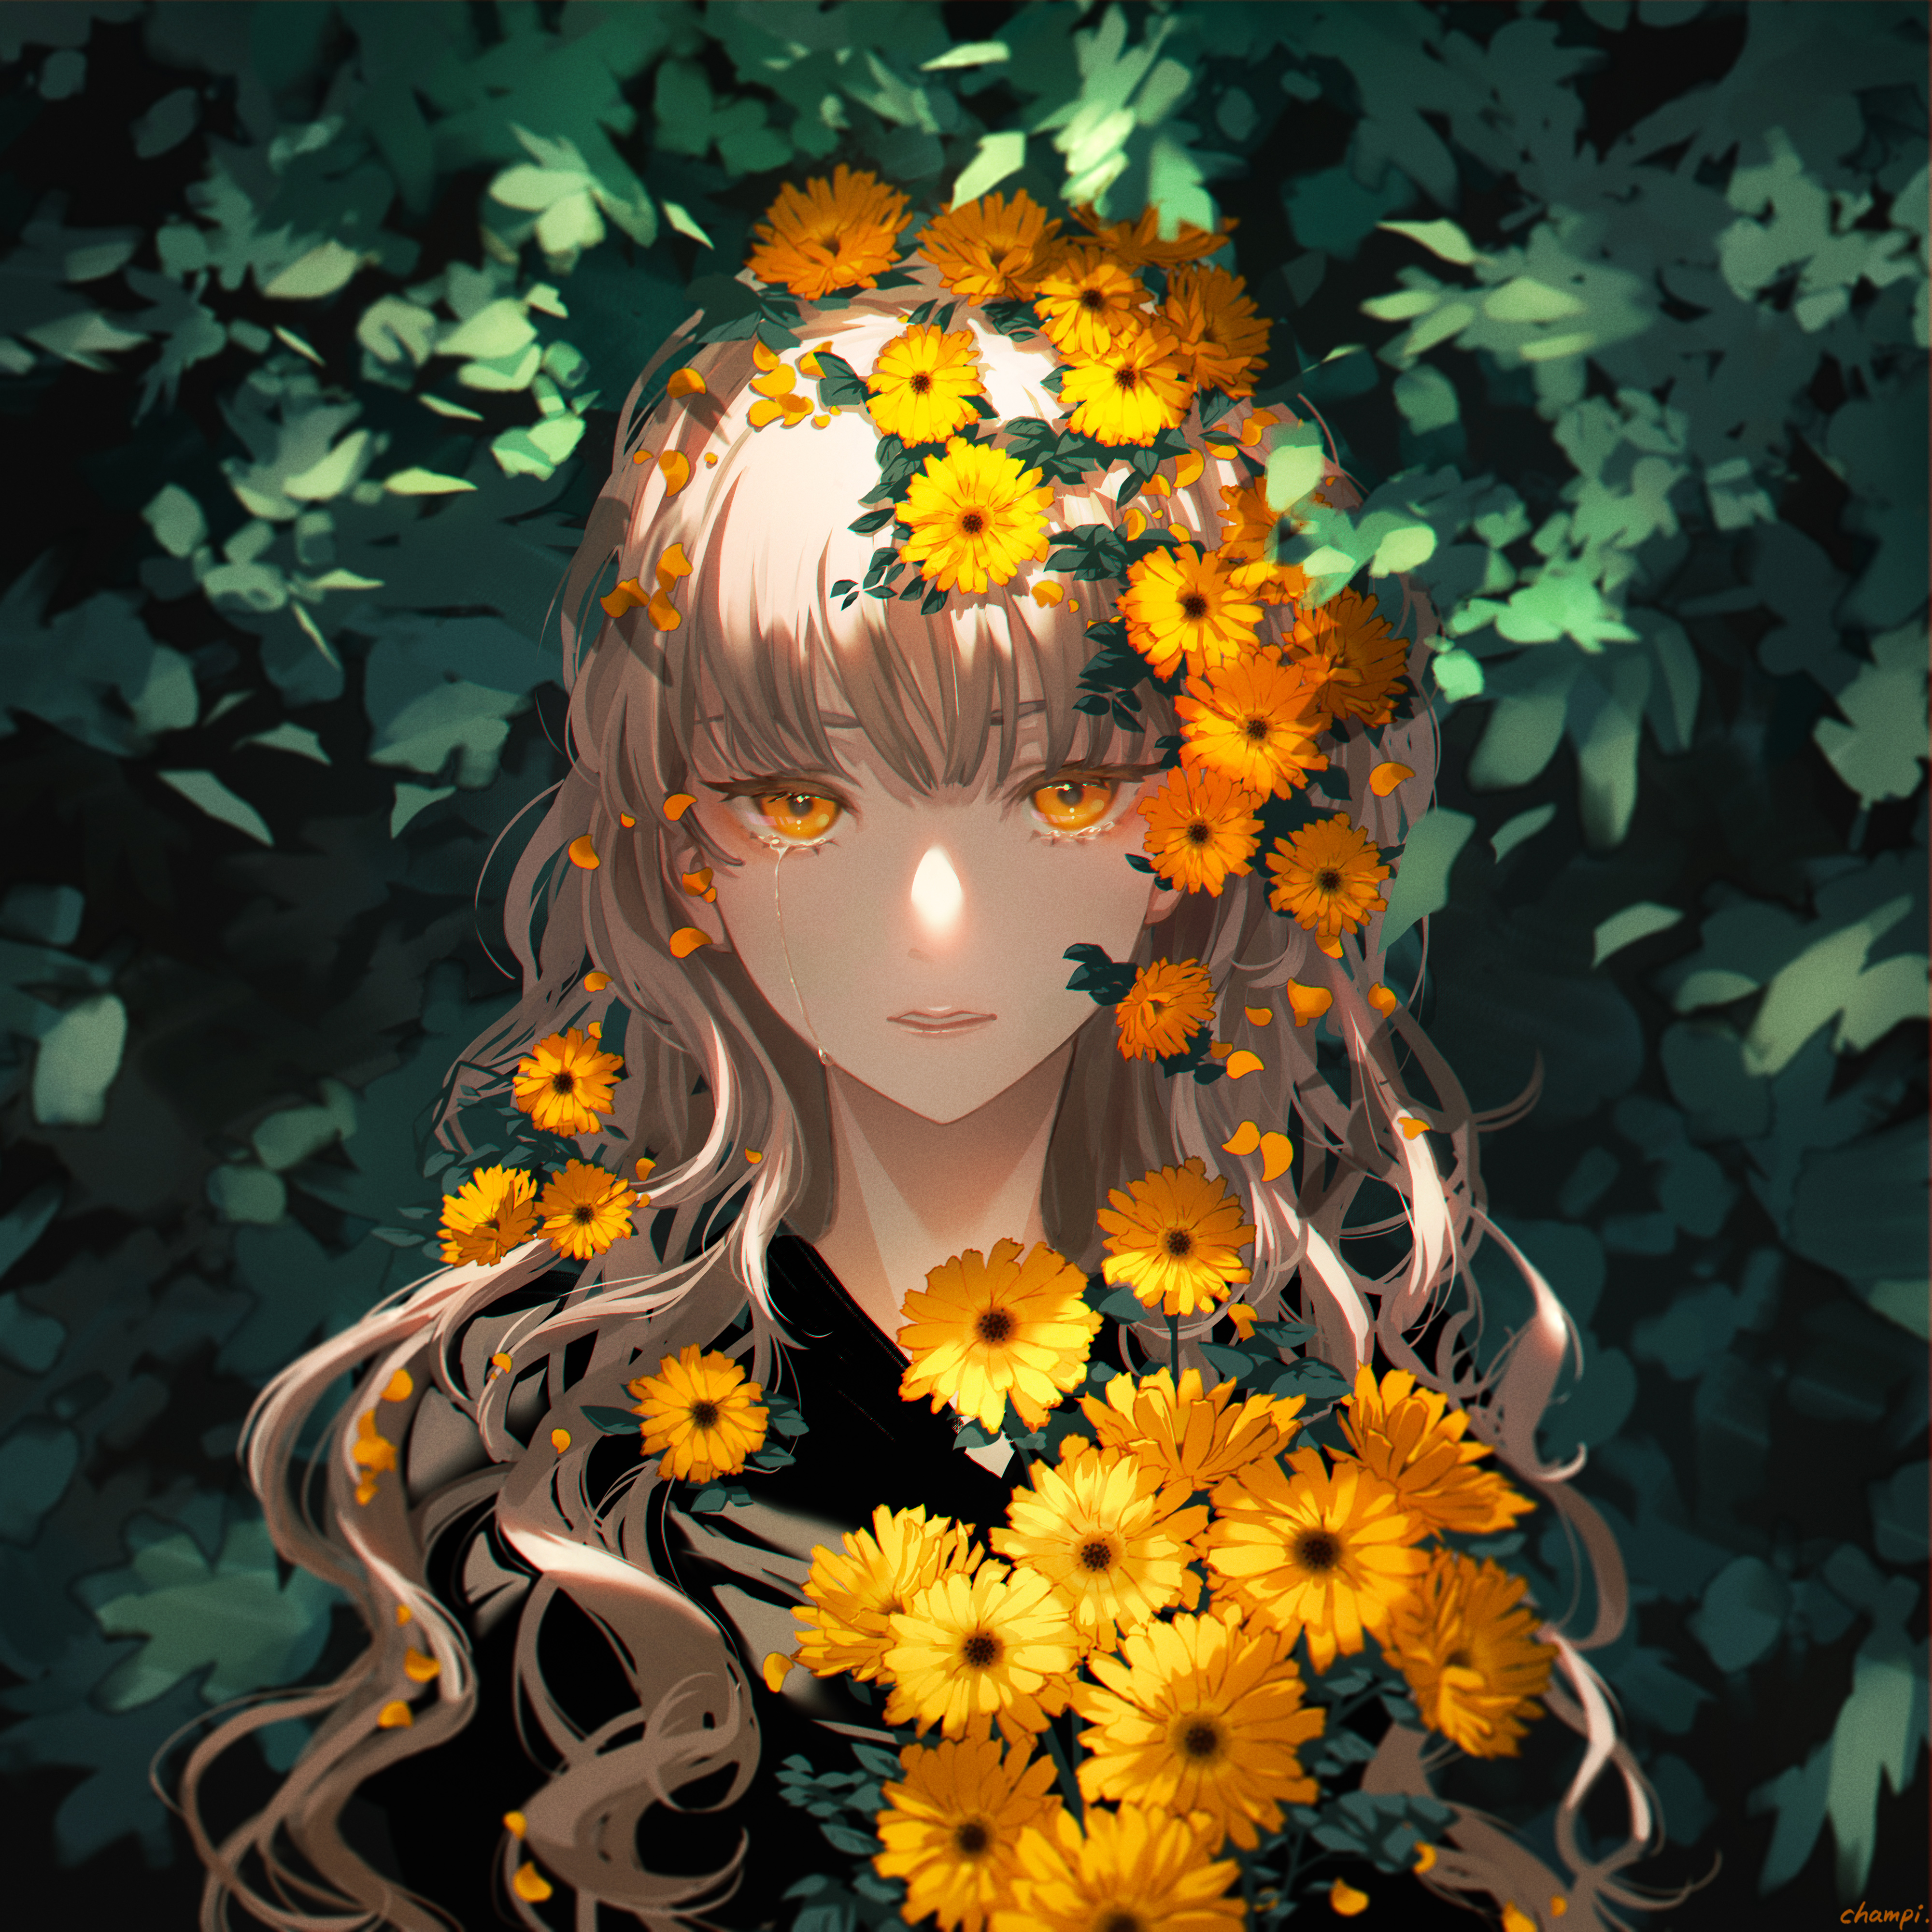 Digital Art Artwork Illustration Women Anime Anime Girls Plants Flowers Sunflowers Long Hair Curly H 4000x4000